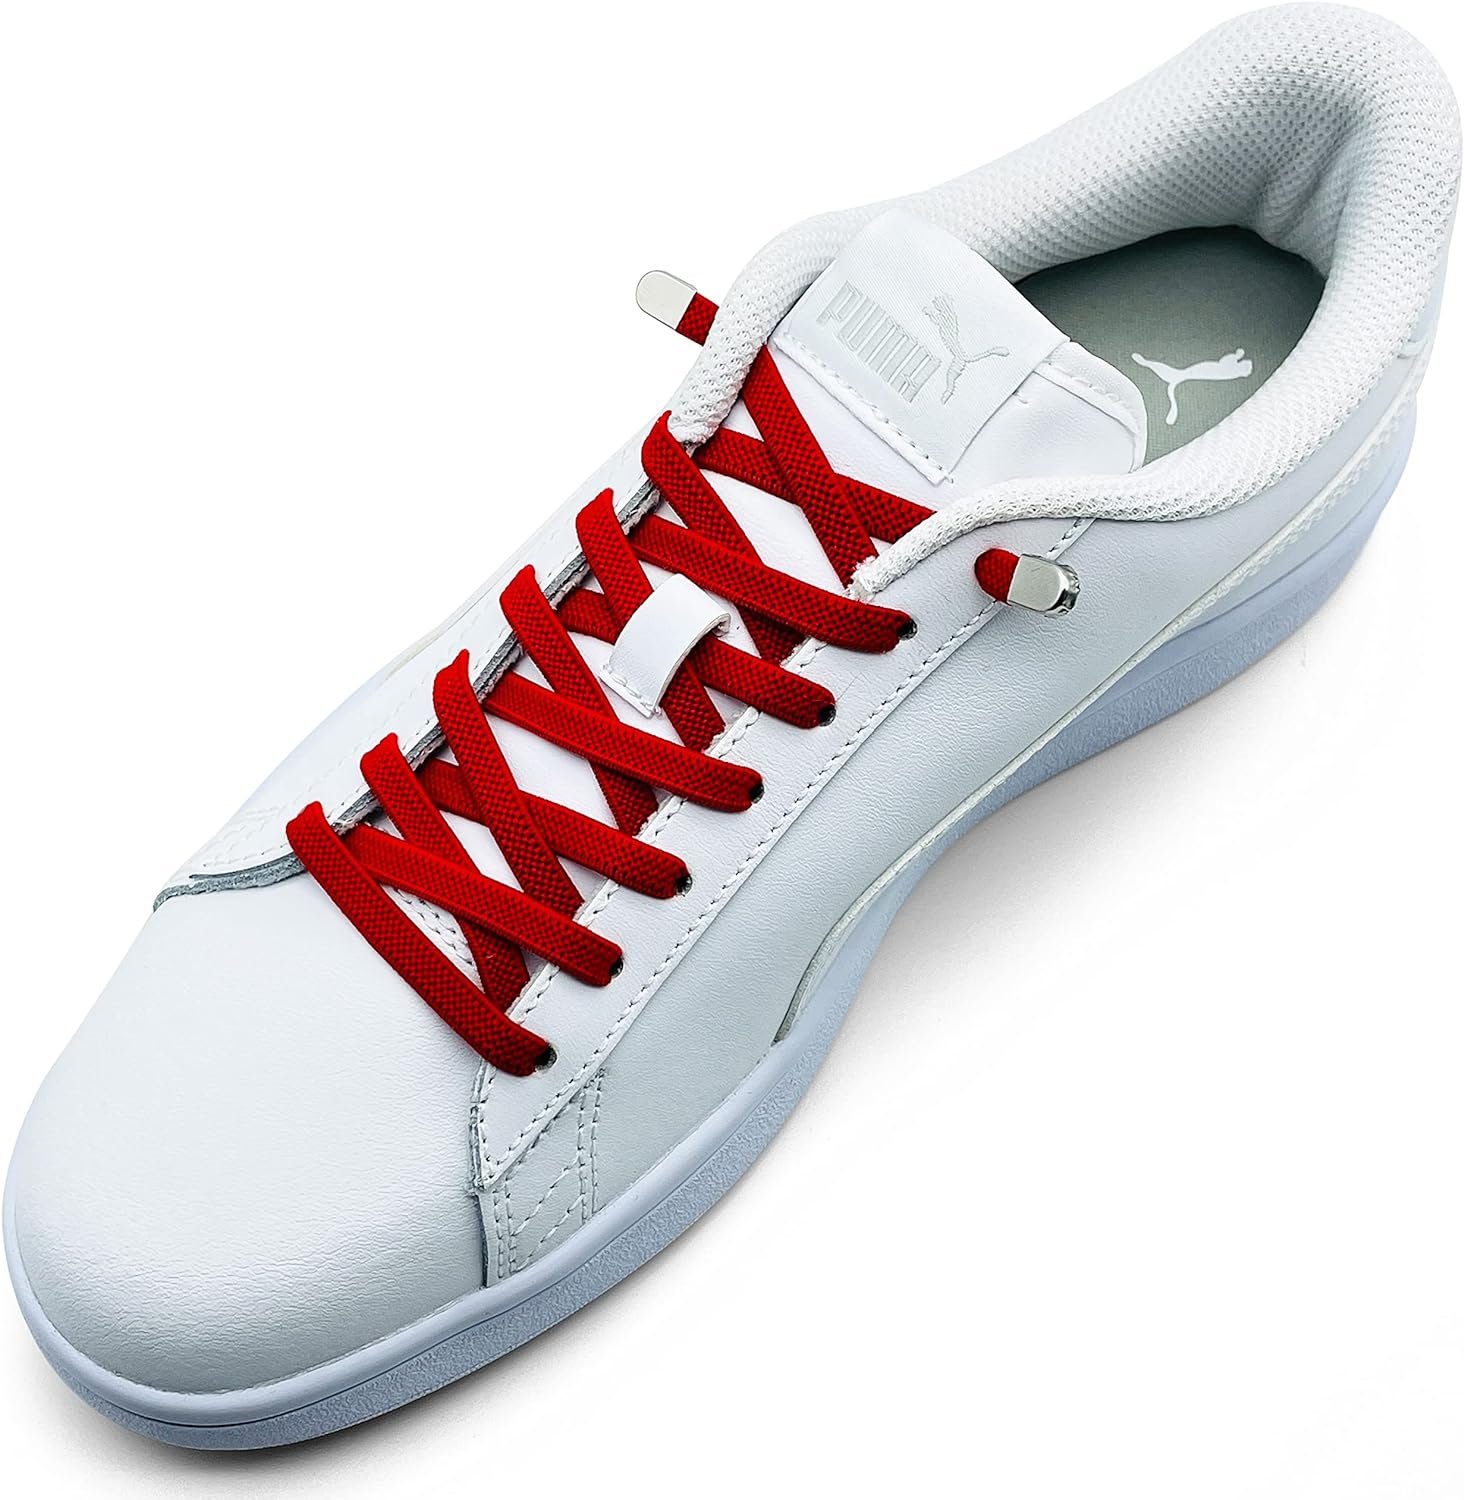 ELANOX Schnürsenkel 4 Stück für 2 Paar Schuhe elastische Schnürsenkel mit Clips, inkl. Enden (Clips) - 8 St. in silber rot